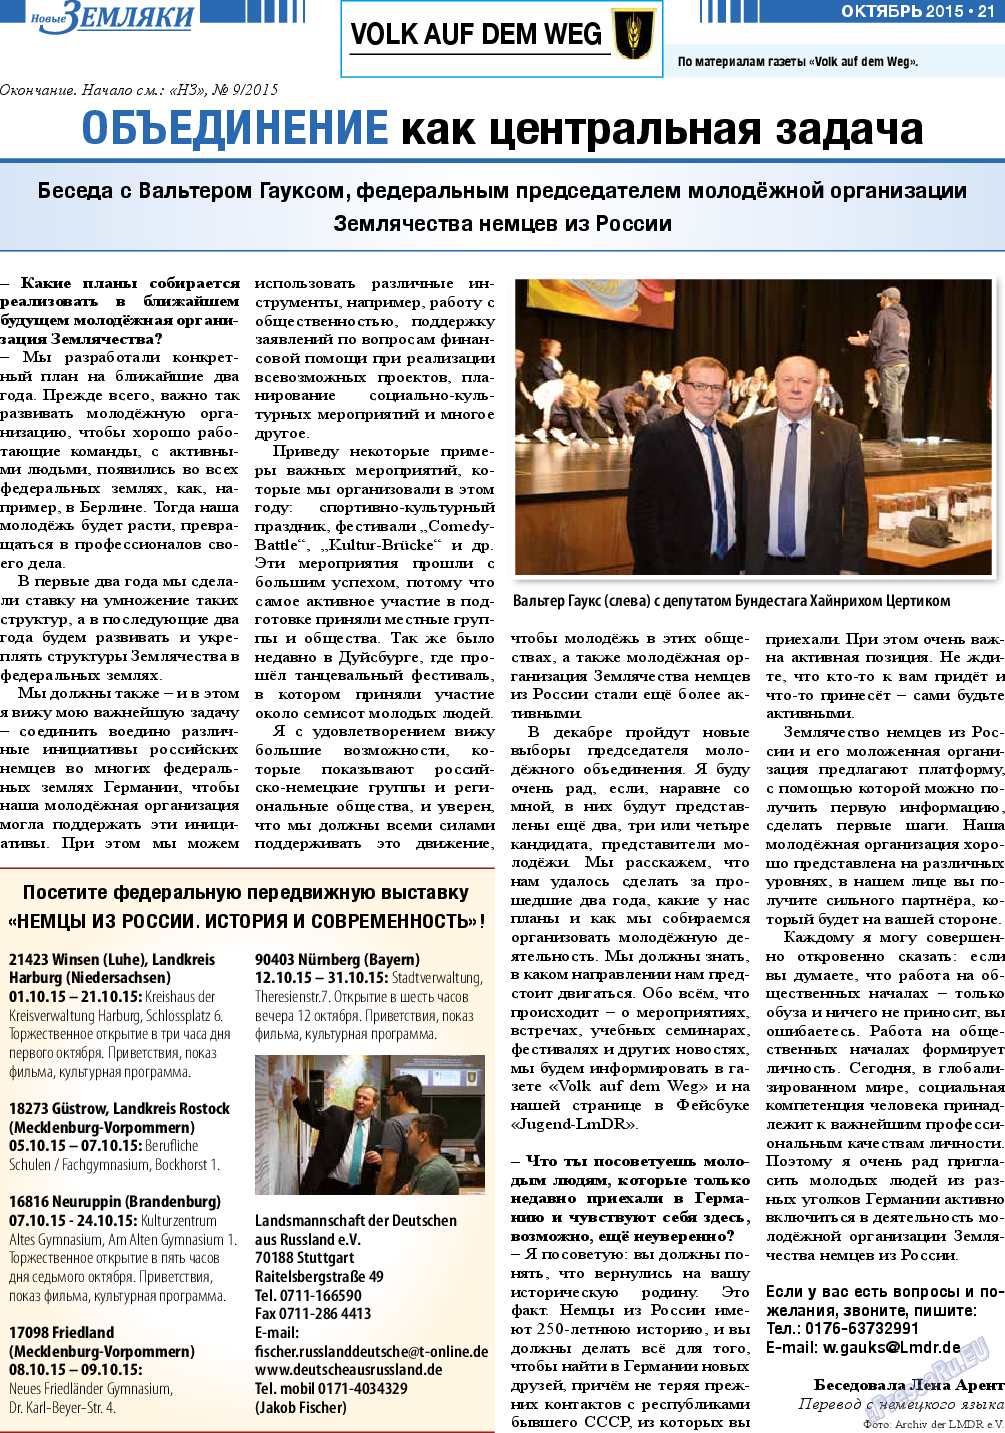 Новые Земляки, газета. 2015 №10 стр.21